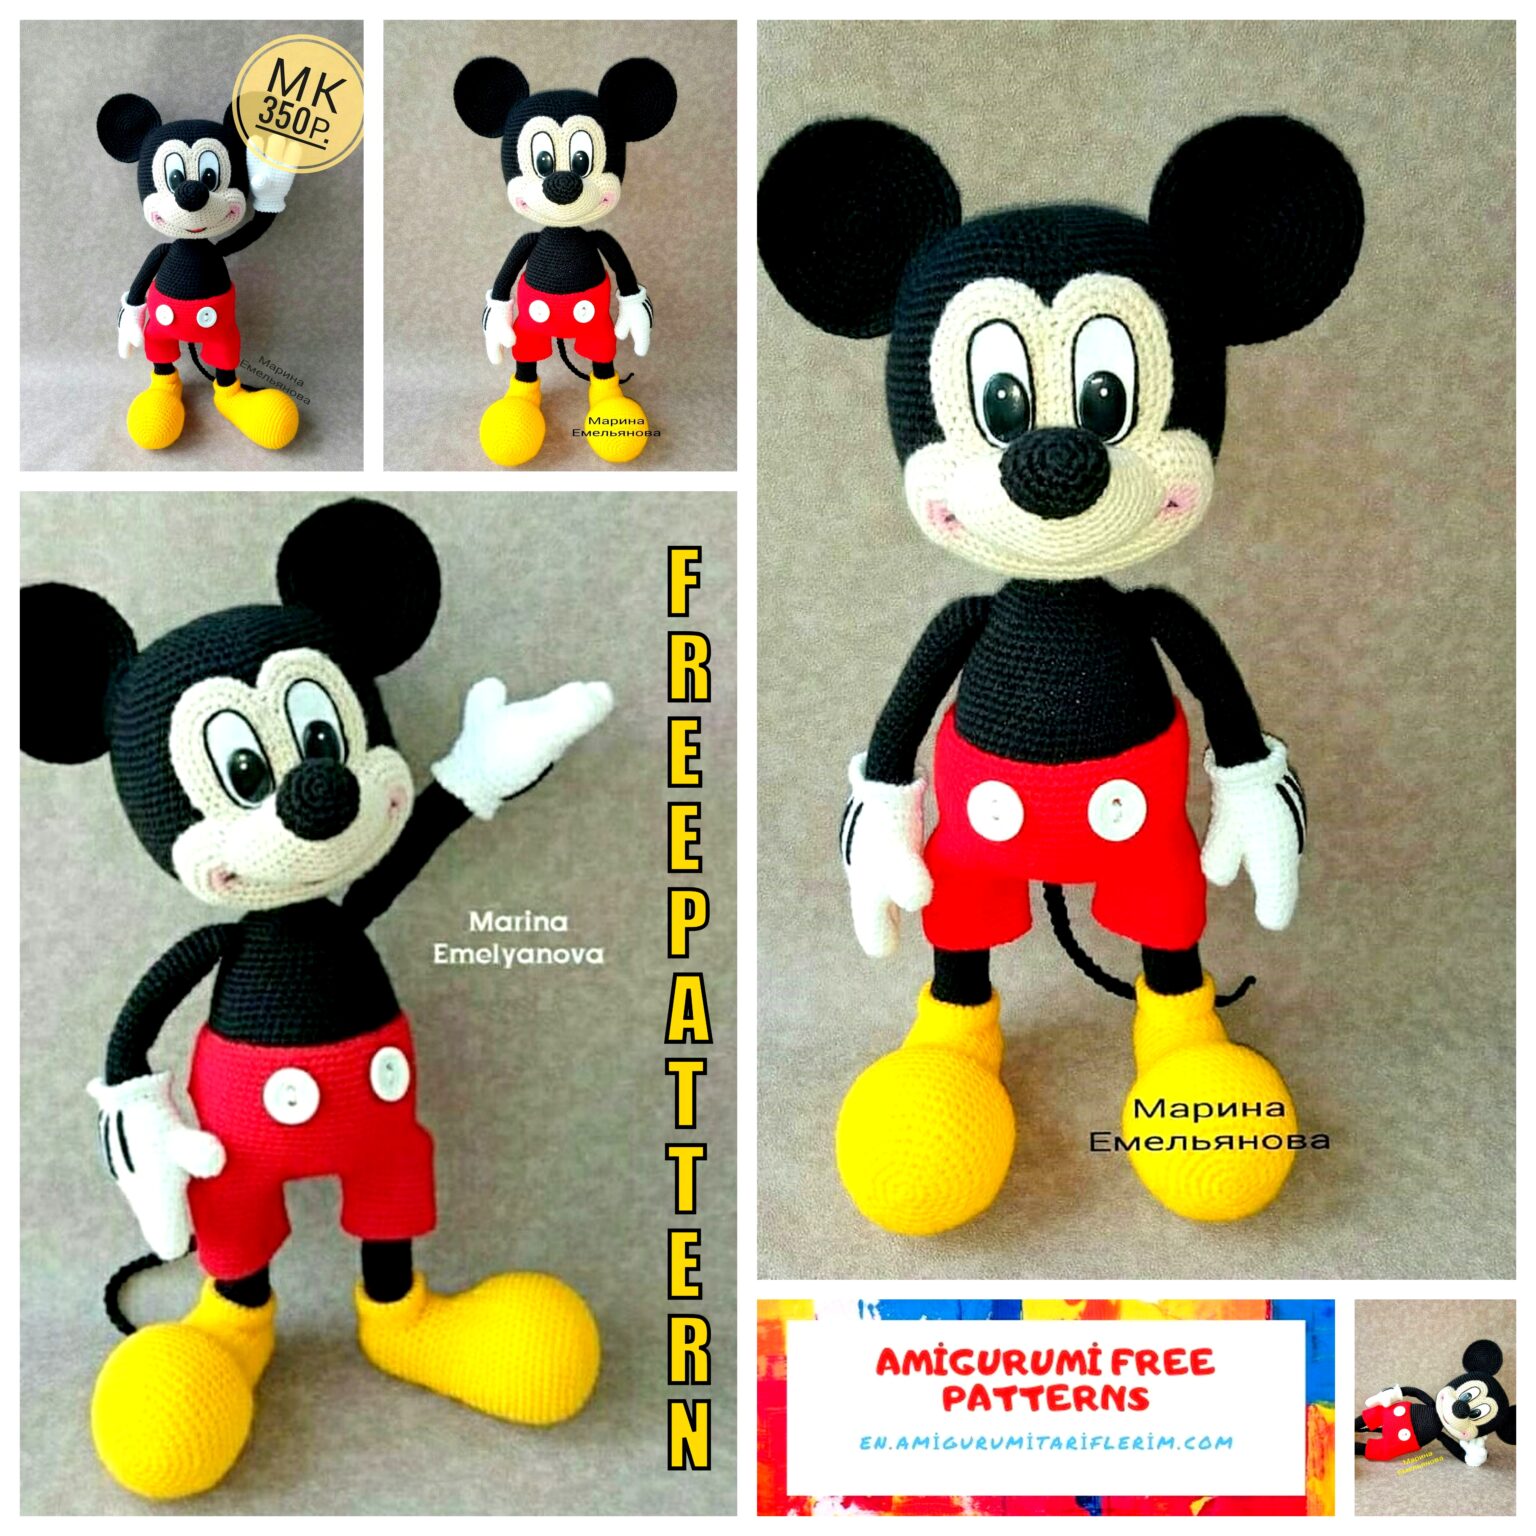 Mickey Mouse Amigurumi Free Pattern – En.amigurumitariflerim.com